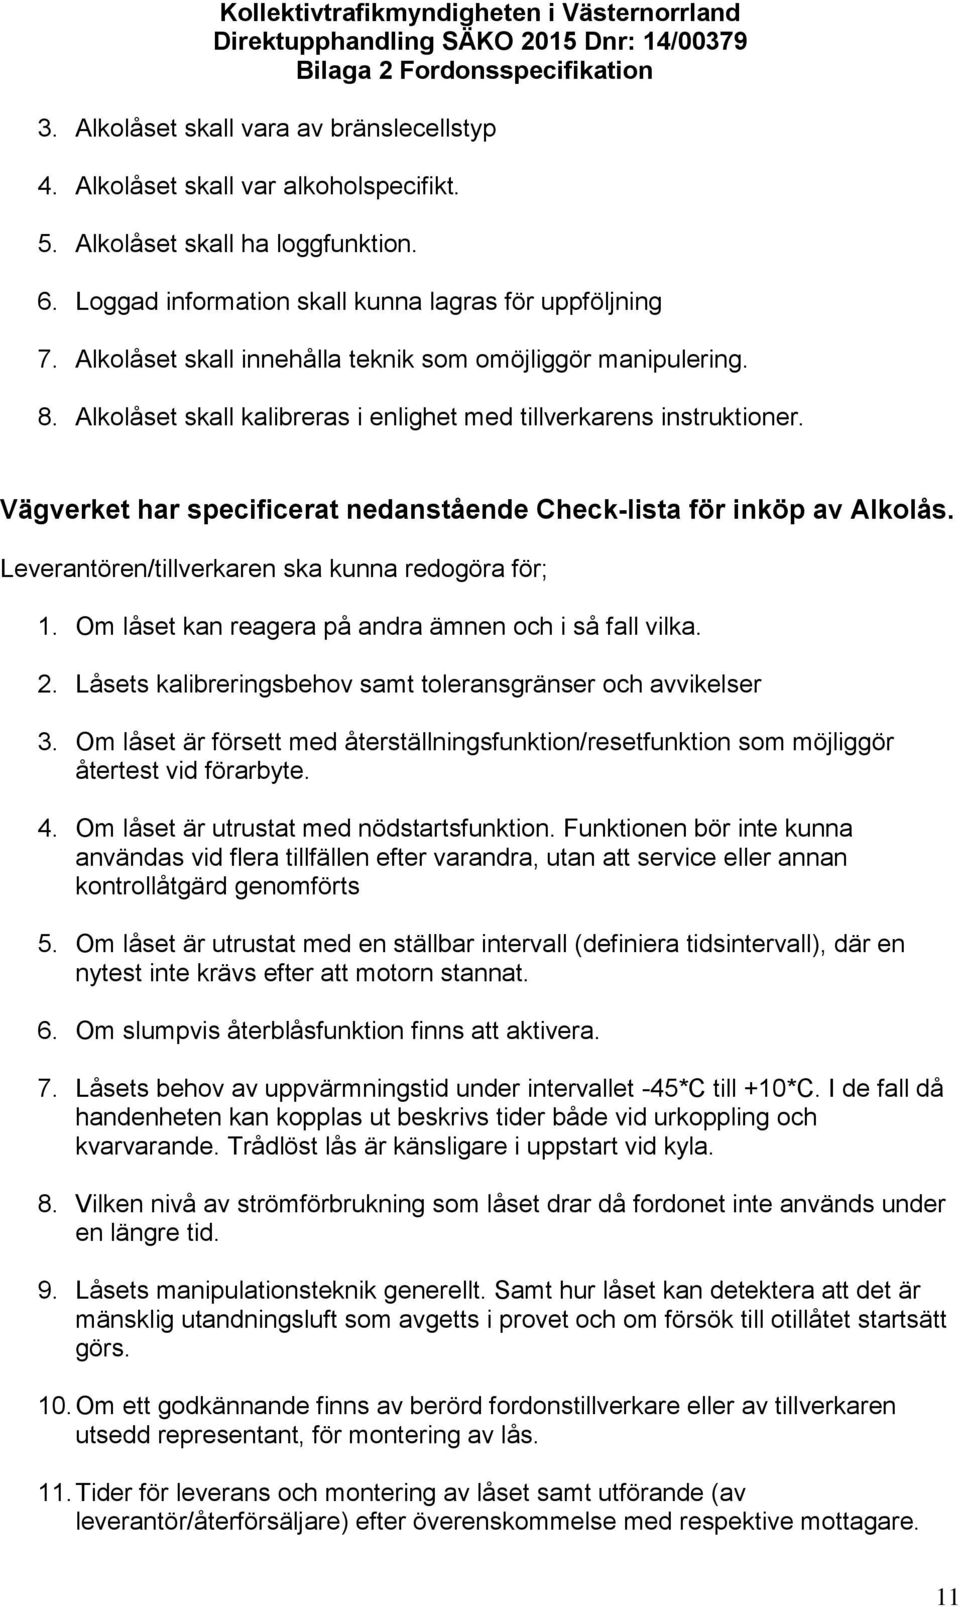 Vägverket har specificerat nedanstående Check-lista för inköp av Alkolås. Leverantören/tillverkaren ska kunna redogöra för; 1. Om låset kan reagera på andra ämnen och i så fall vilka. 2.